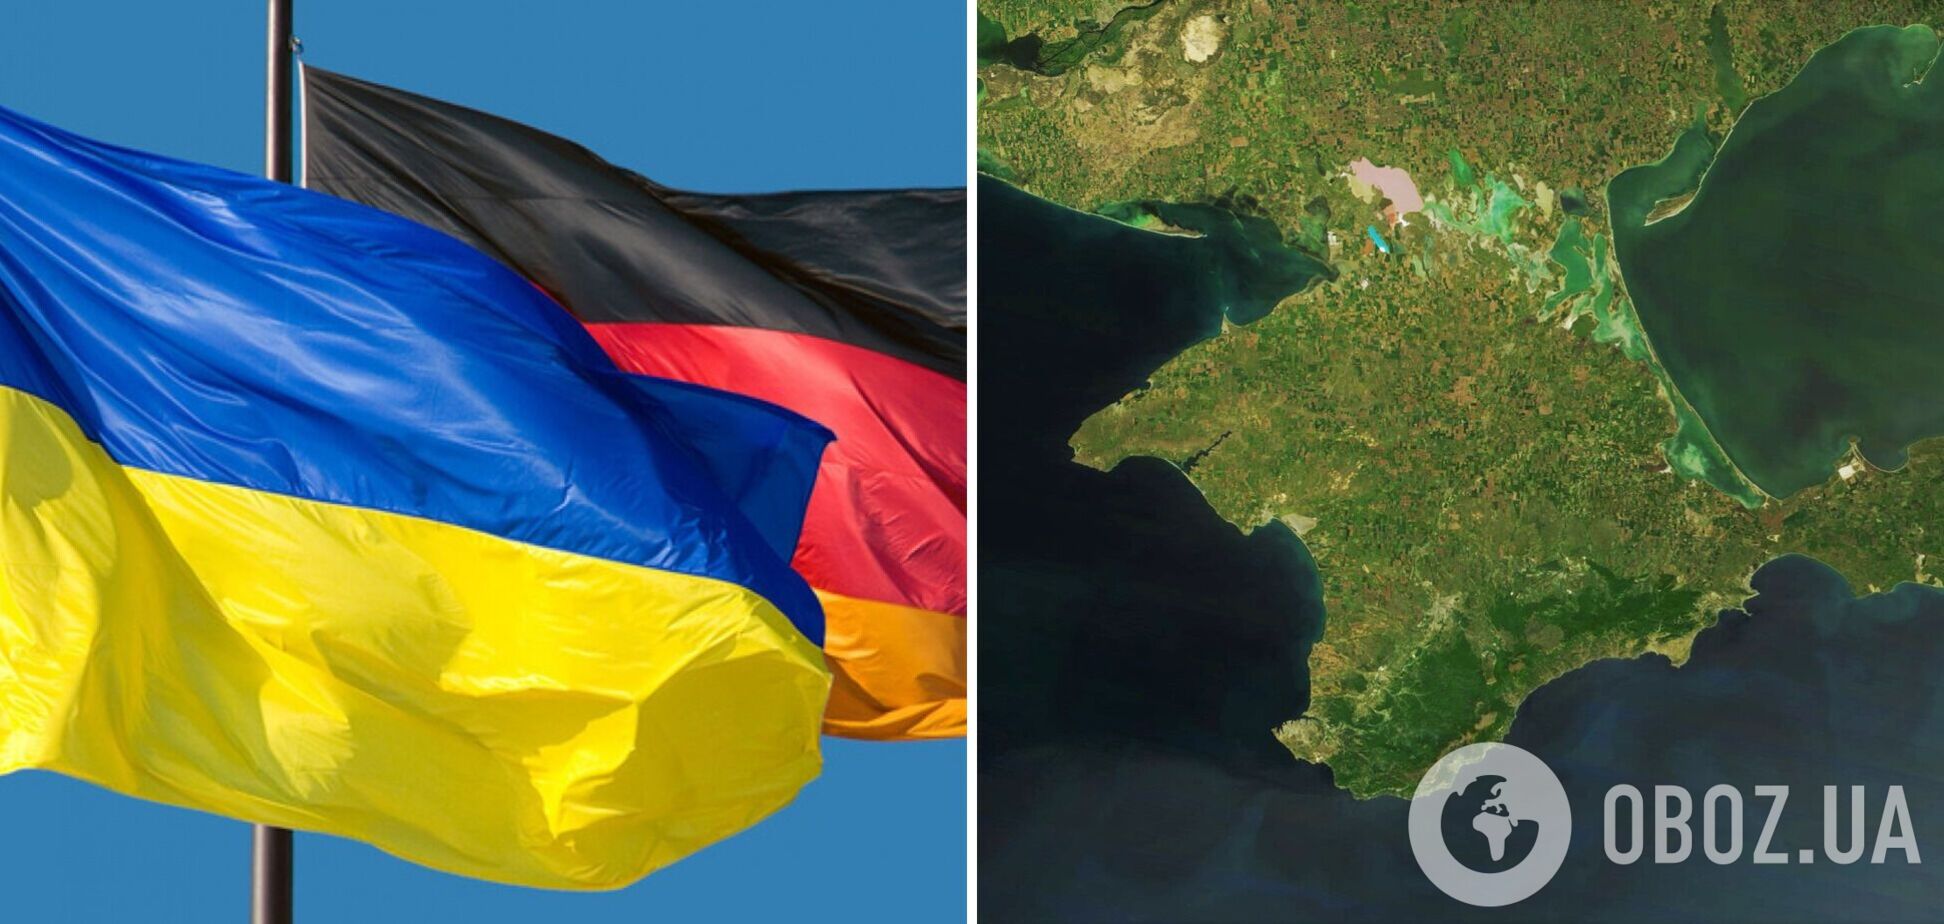 Командующий ВМС Германии спровоцировал скандал и дал заднюю, Украина вызвала посла ФРГ 'на ковер'